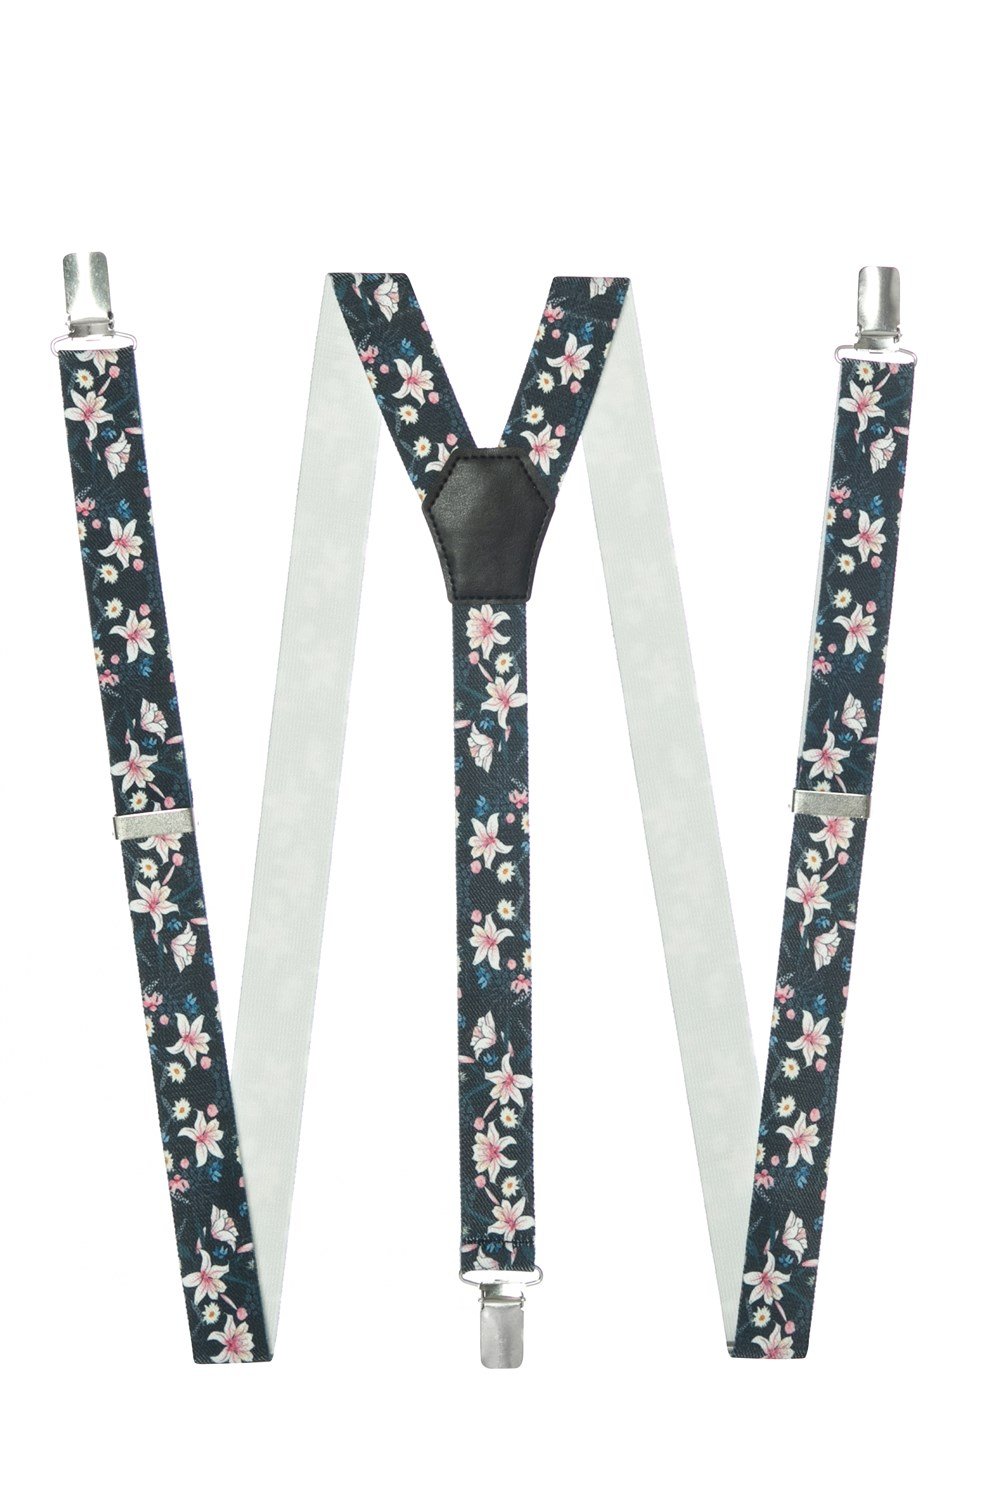 Dwoy | Çiçek Desenli Pantolon askısı modelleri , Pantolon askısı kombinleri  , Suspenders